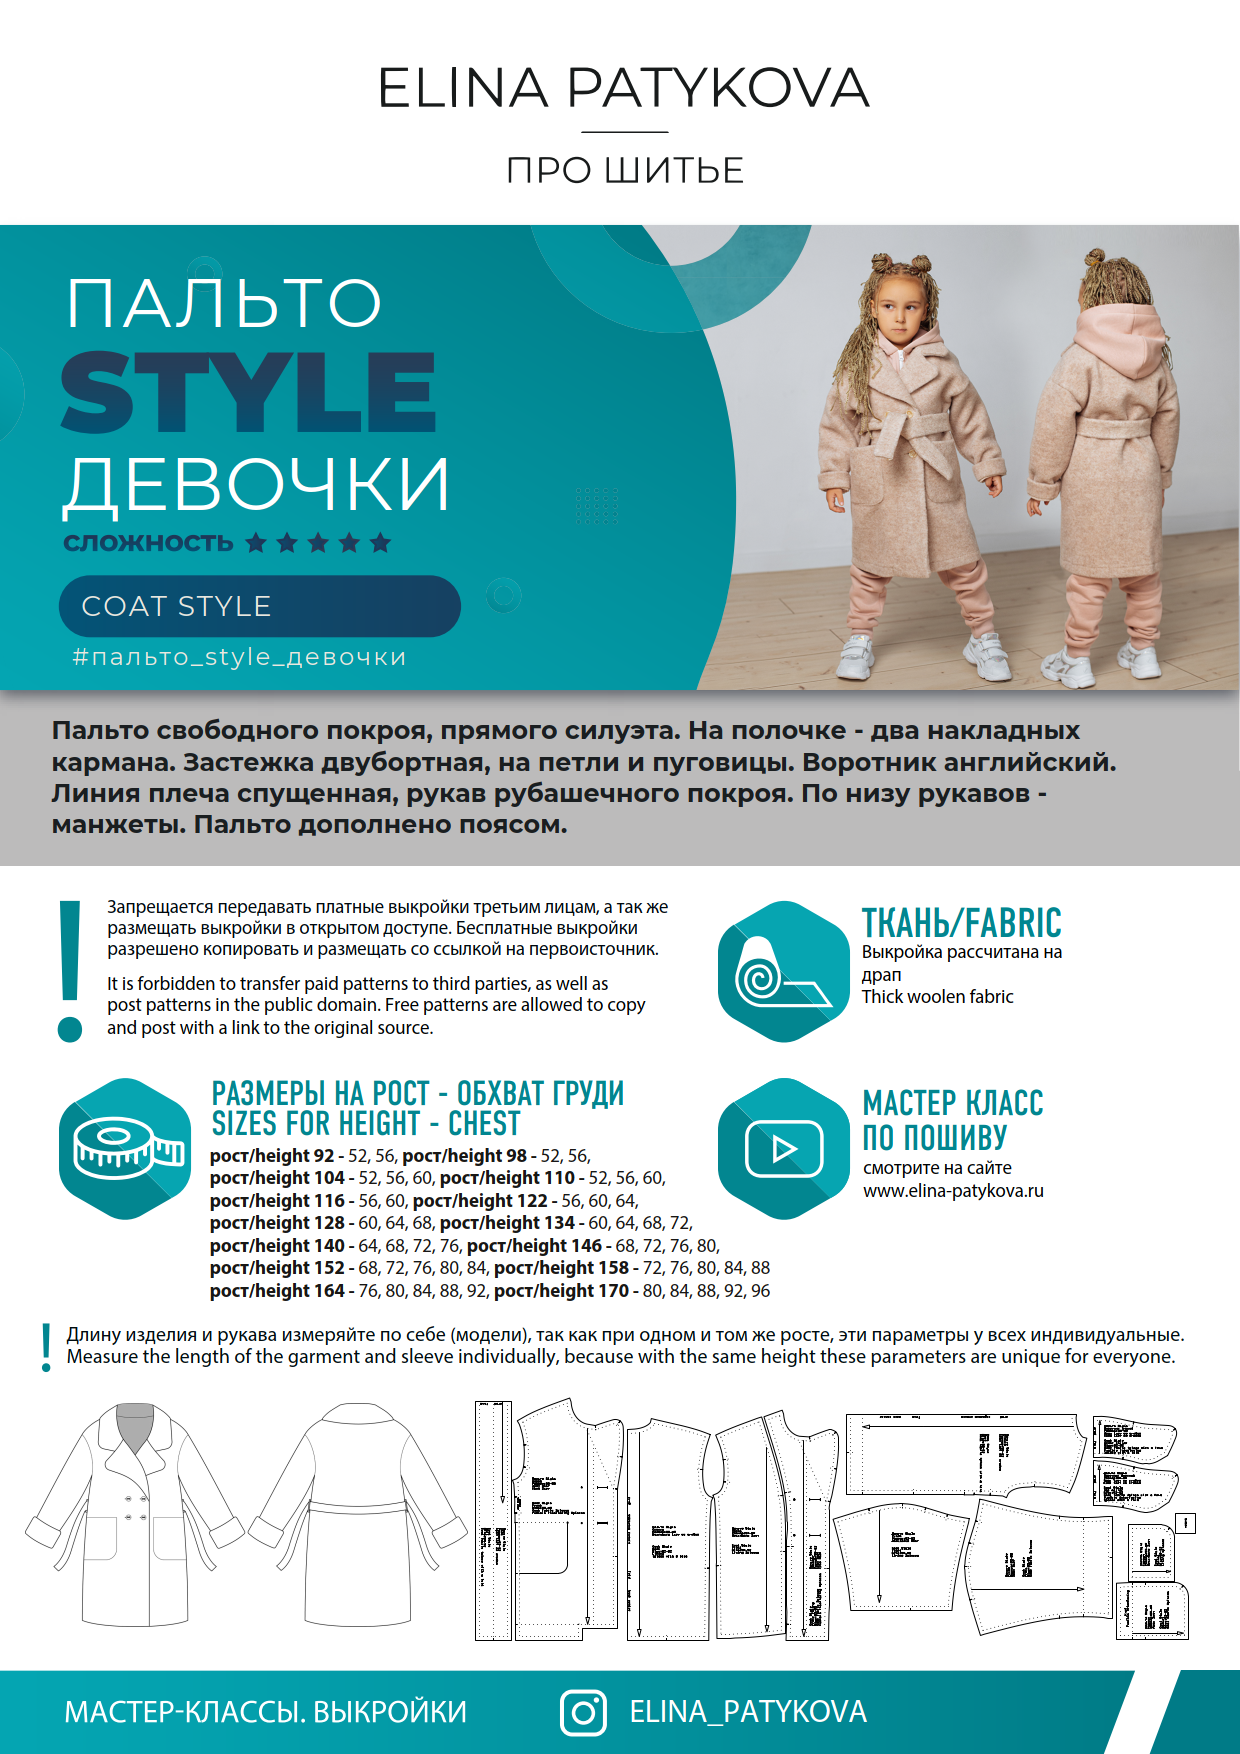 Бесплатные выкройки для детей и взрослых | ВКонтакте